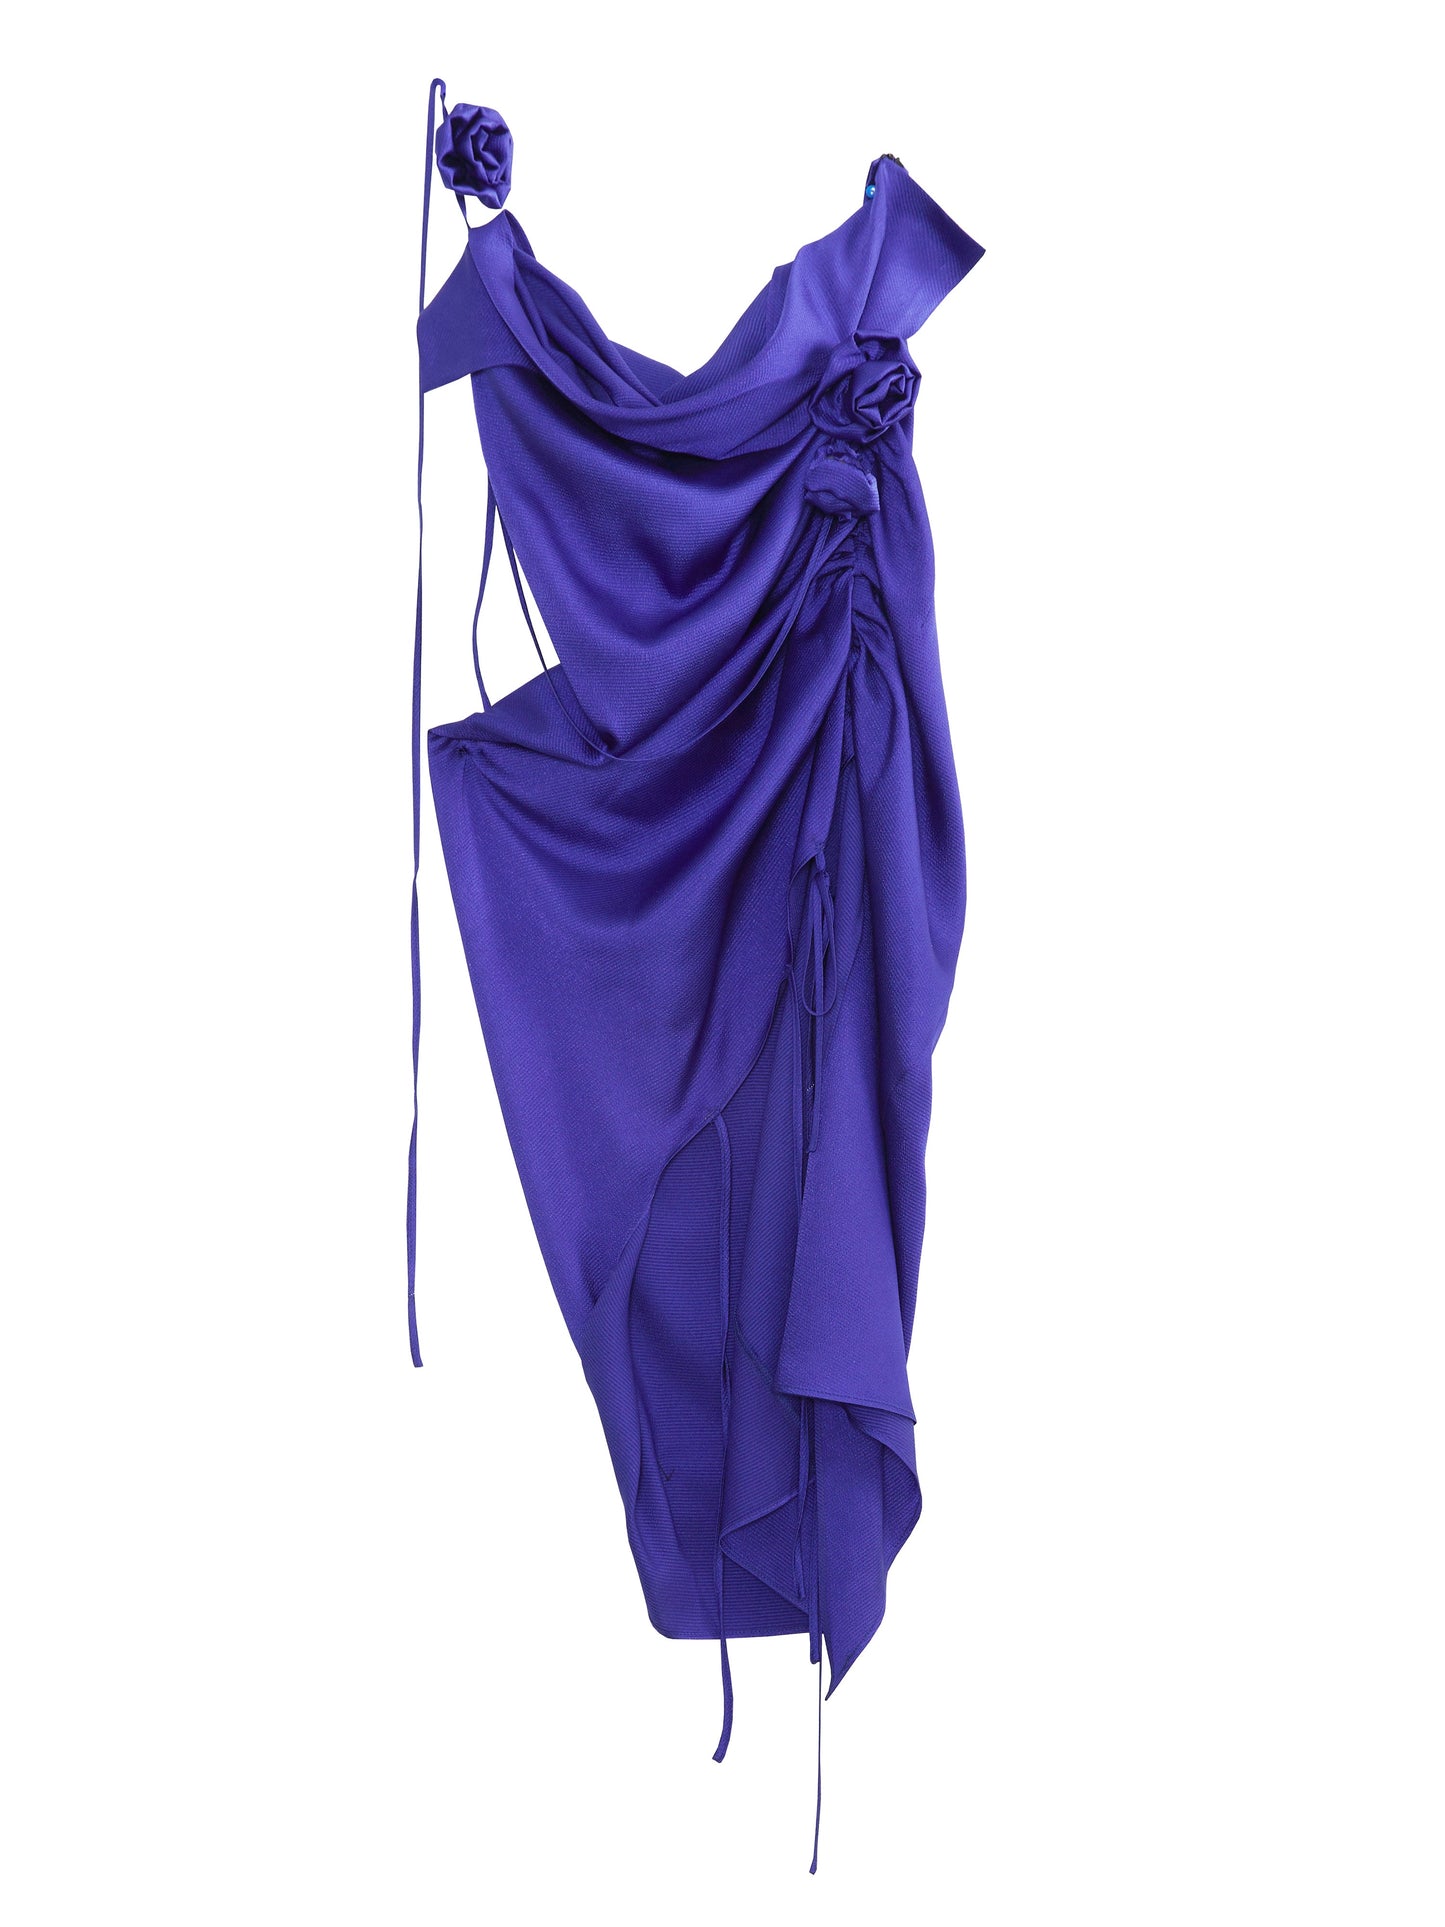 Rosenmotivriemen Halfterhalter blaues Kleid Kleid